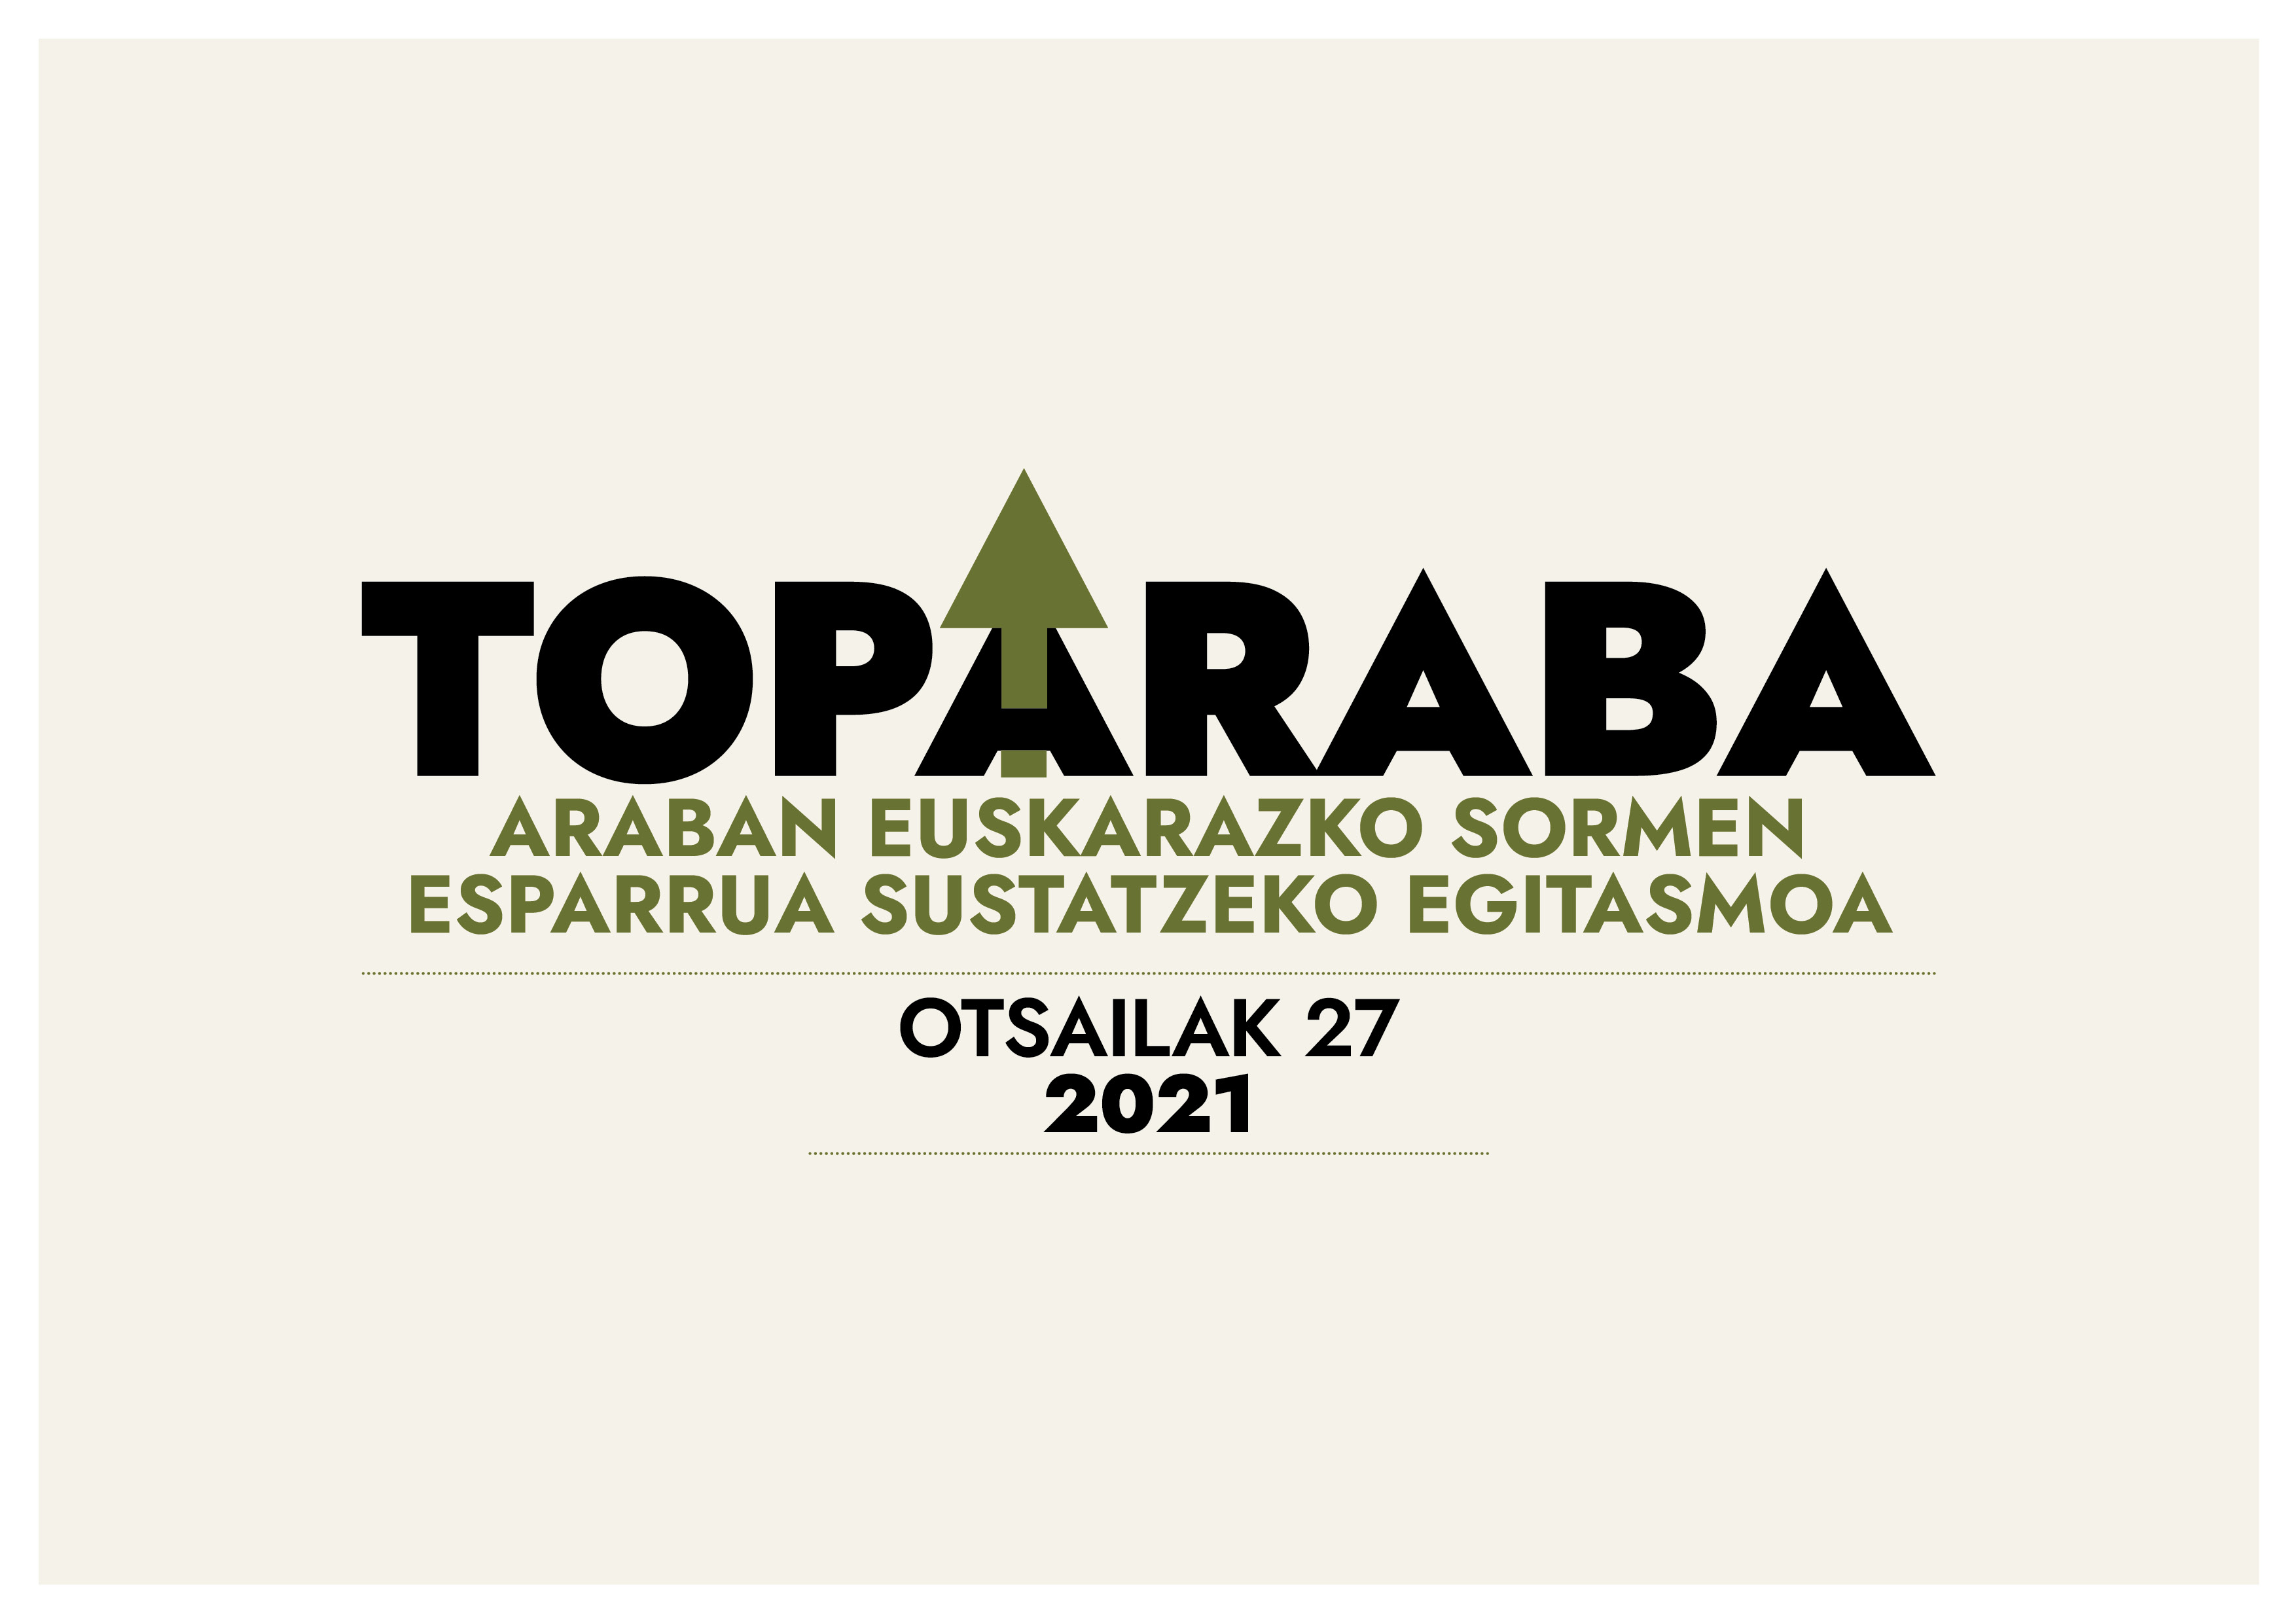 Araban euskarazko sormena sustatzeko TopArabara sortu du Oihanederrek